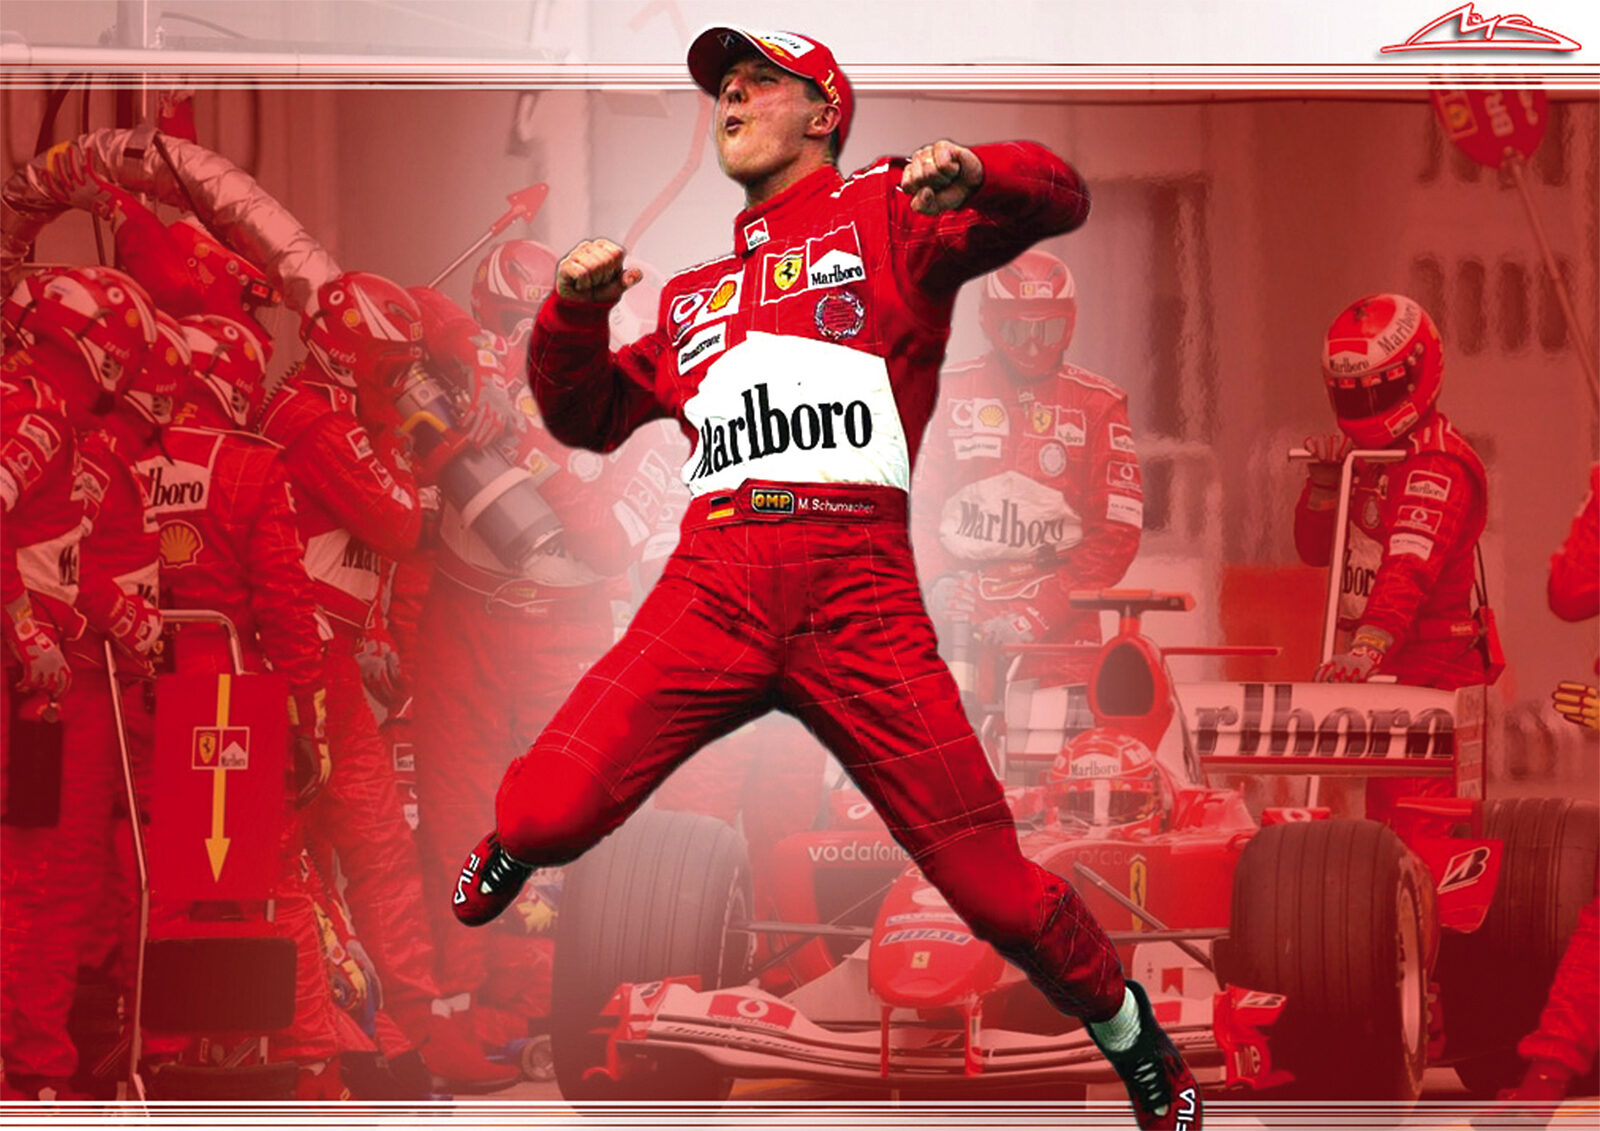 Michael Schumacher F1 Legend Jumping POSTER